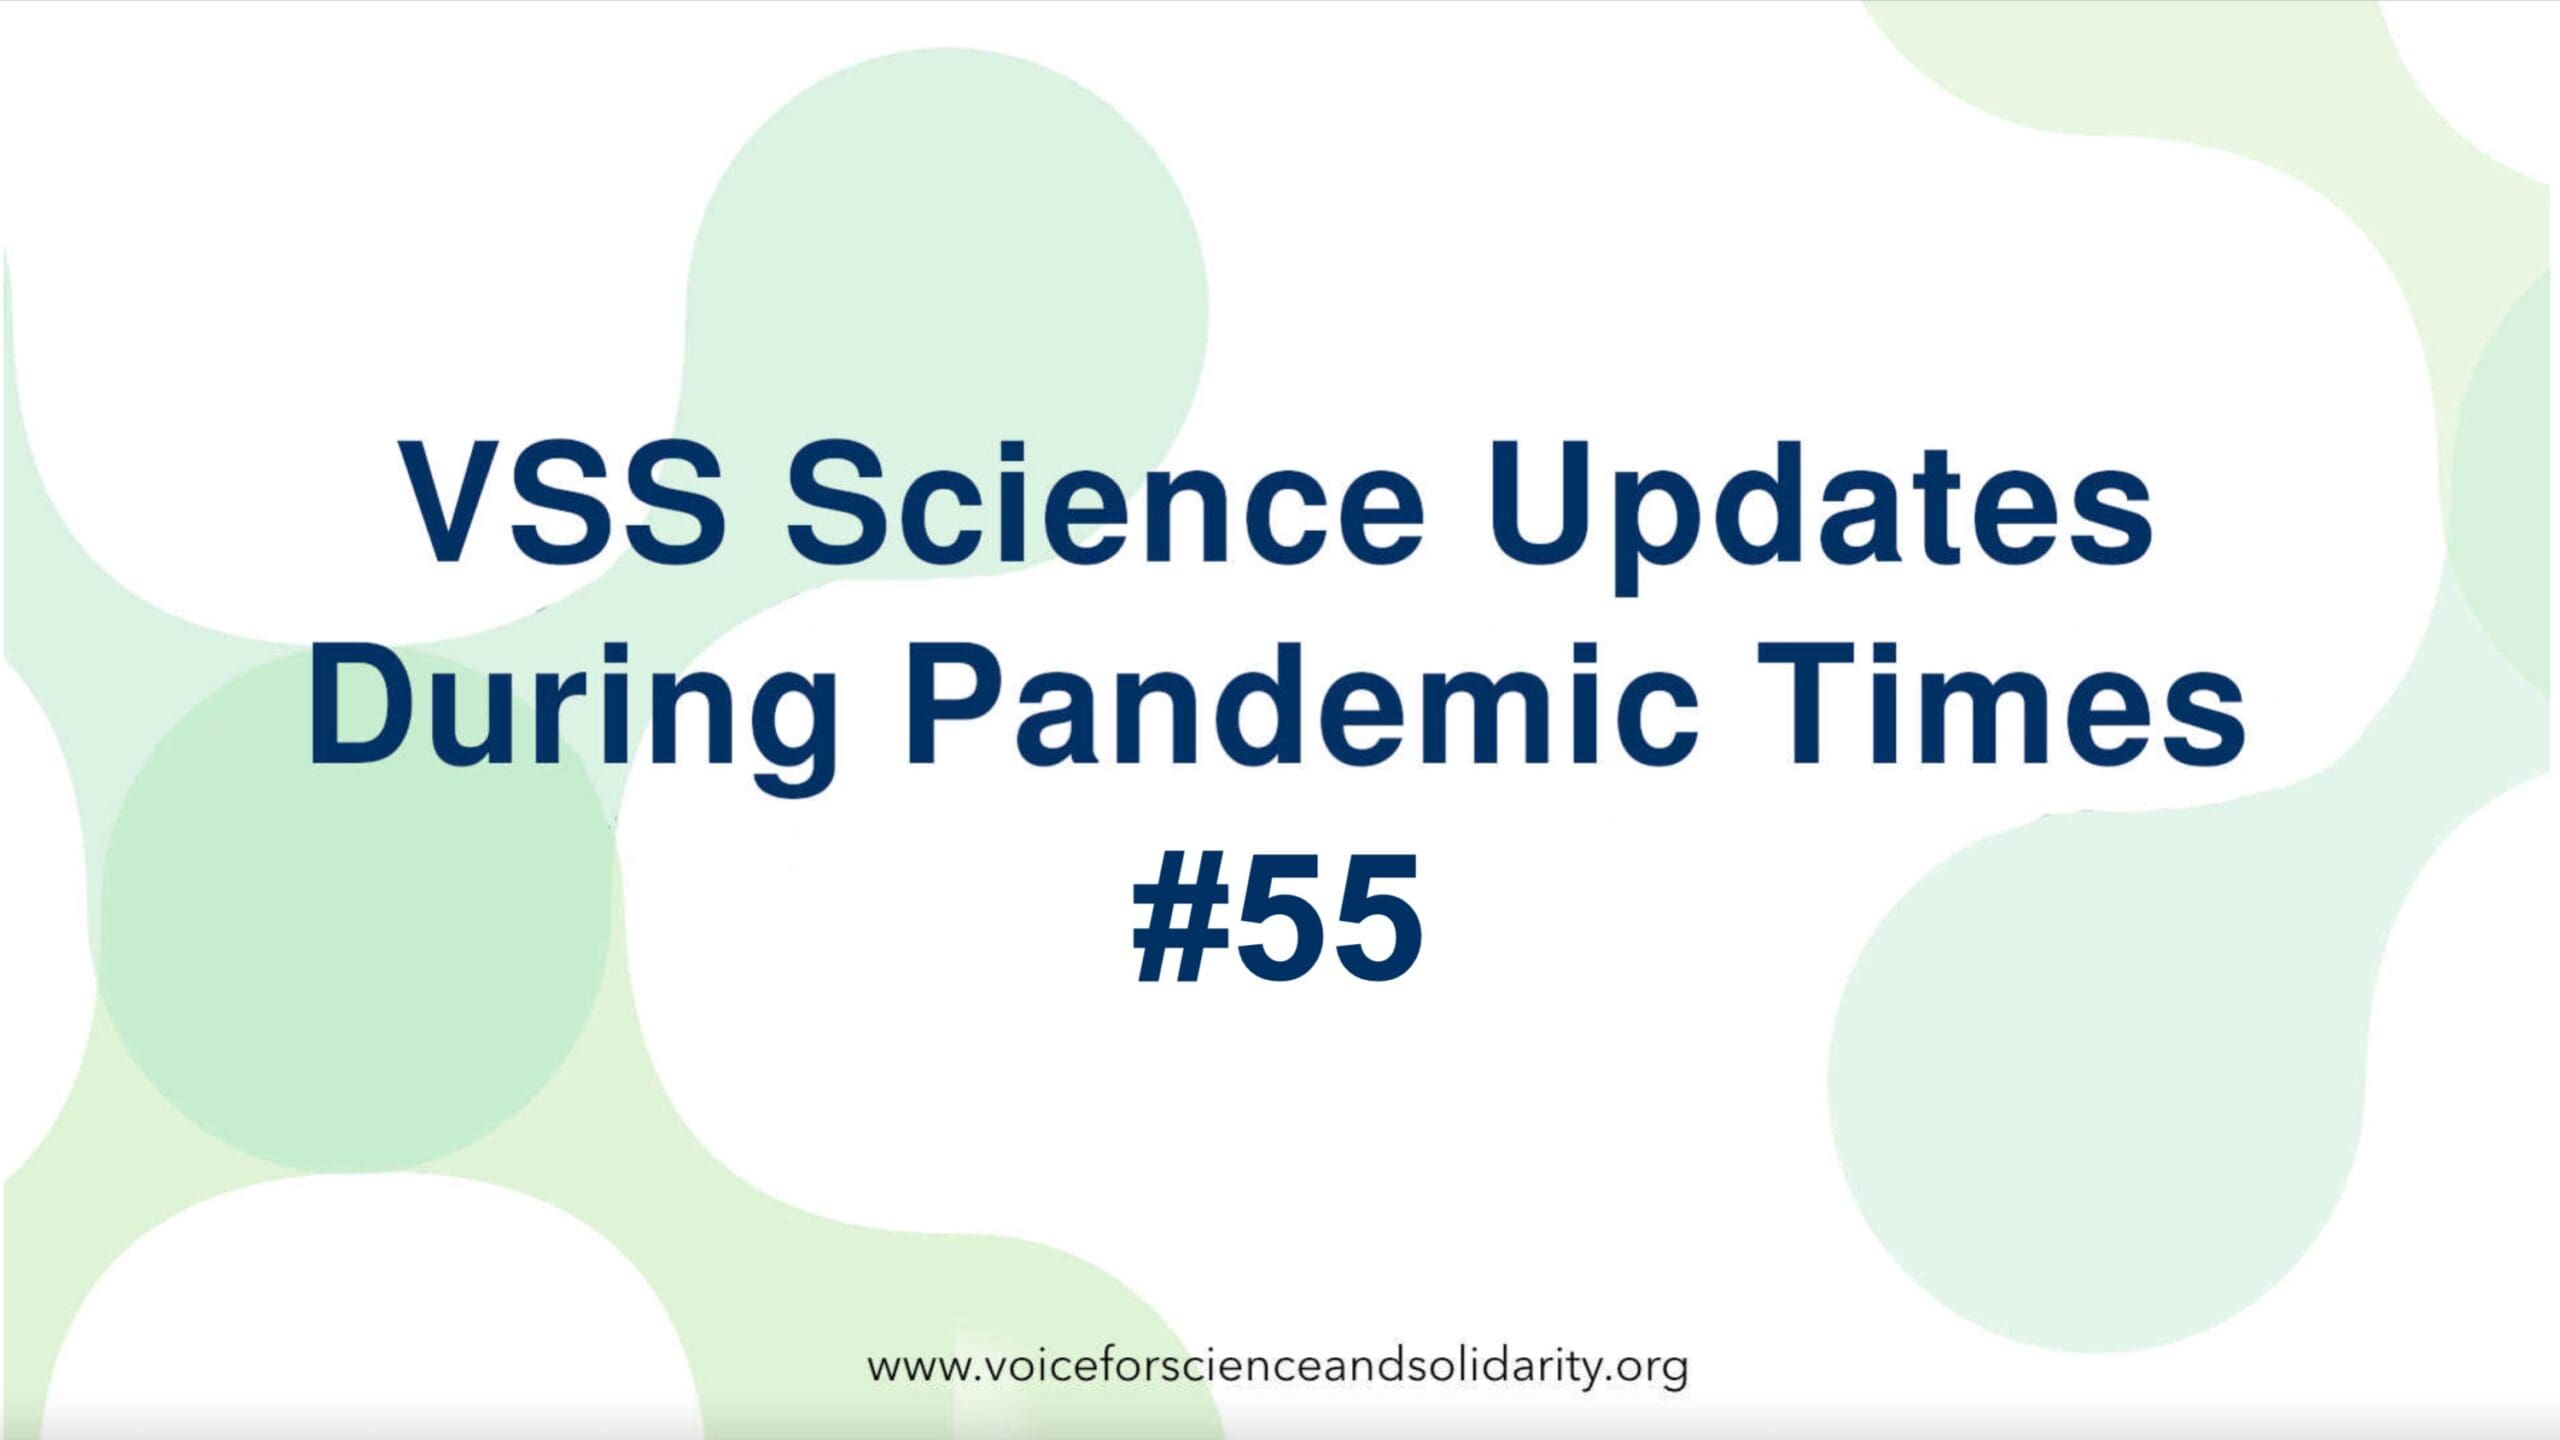 vss-wissenschaftliche-updates-waehrend-der-pandemiezeit-#55-|-stimme-fuer-wissenschaft-und-solidaritaet